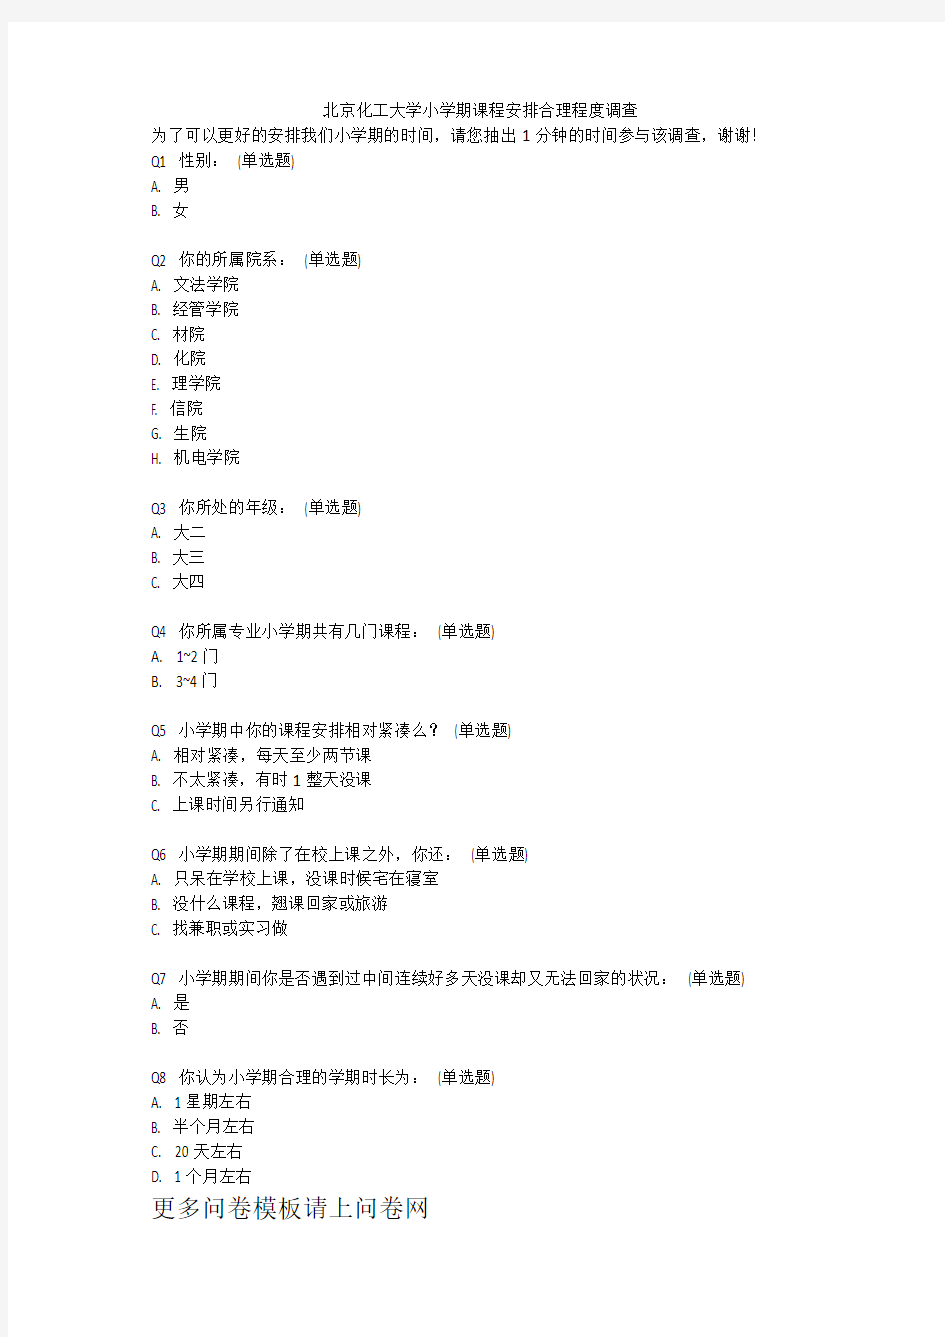 北京化工大学小学期课程安排合理程度调查